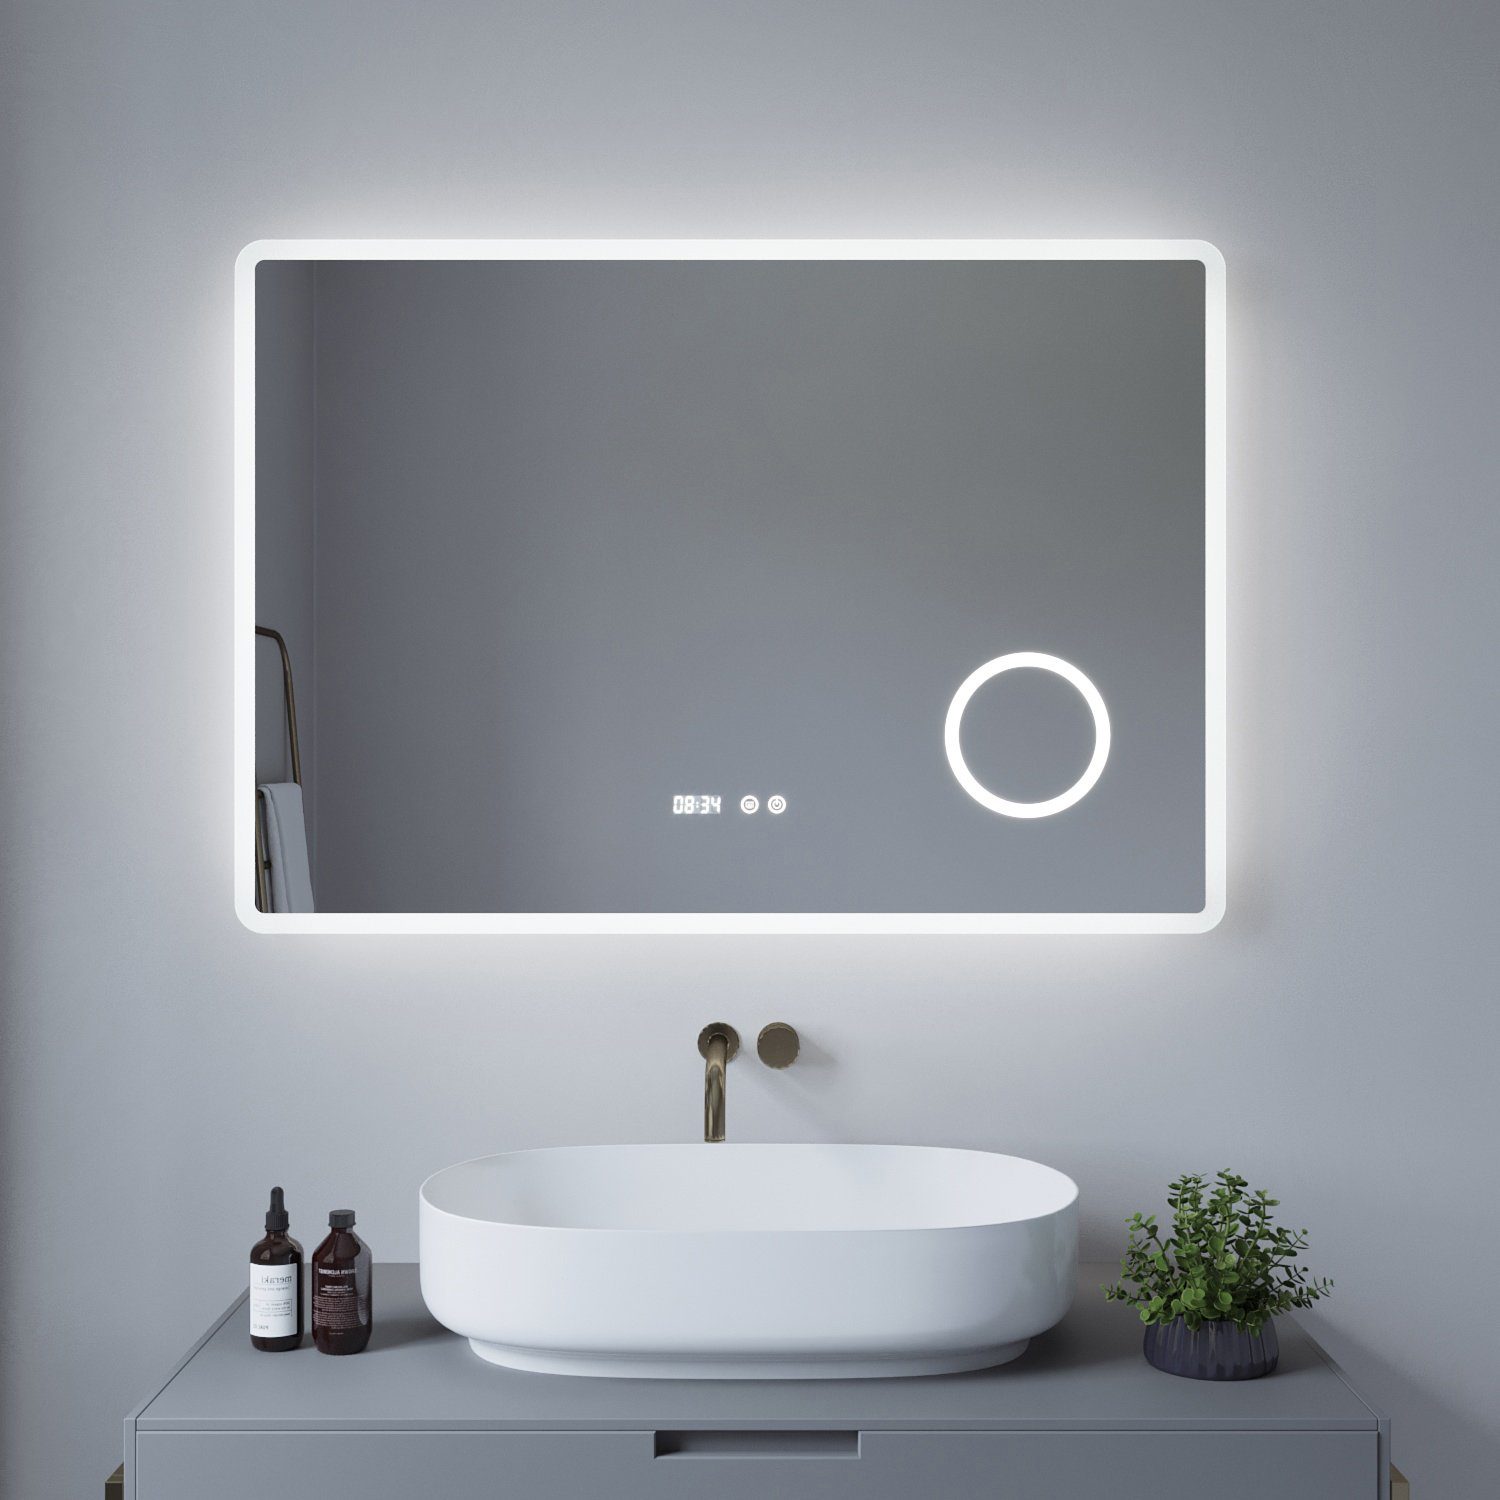 AQUALAVOS Badspiegel Badspiegel mit LED Beleuchtung Beschlagfrei Kosmetikspiegel mit Uhr, 3 fach-Vergrößerung Schminkspiegel, dimmbar, Kaltweiß, Energiesparend